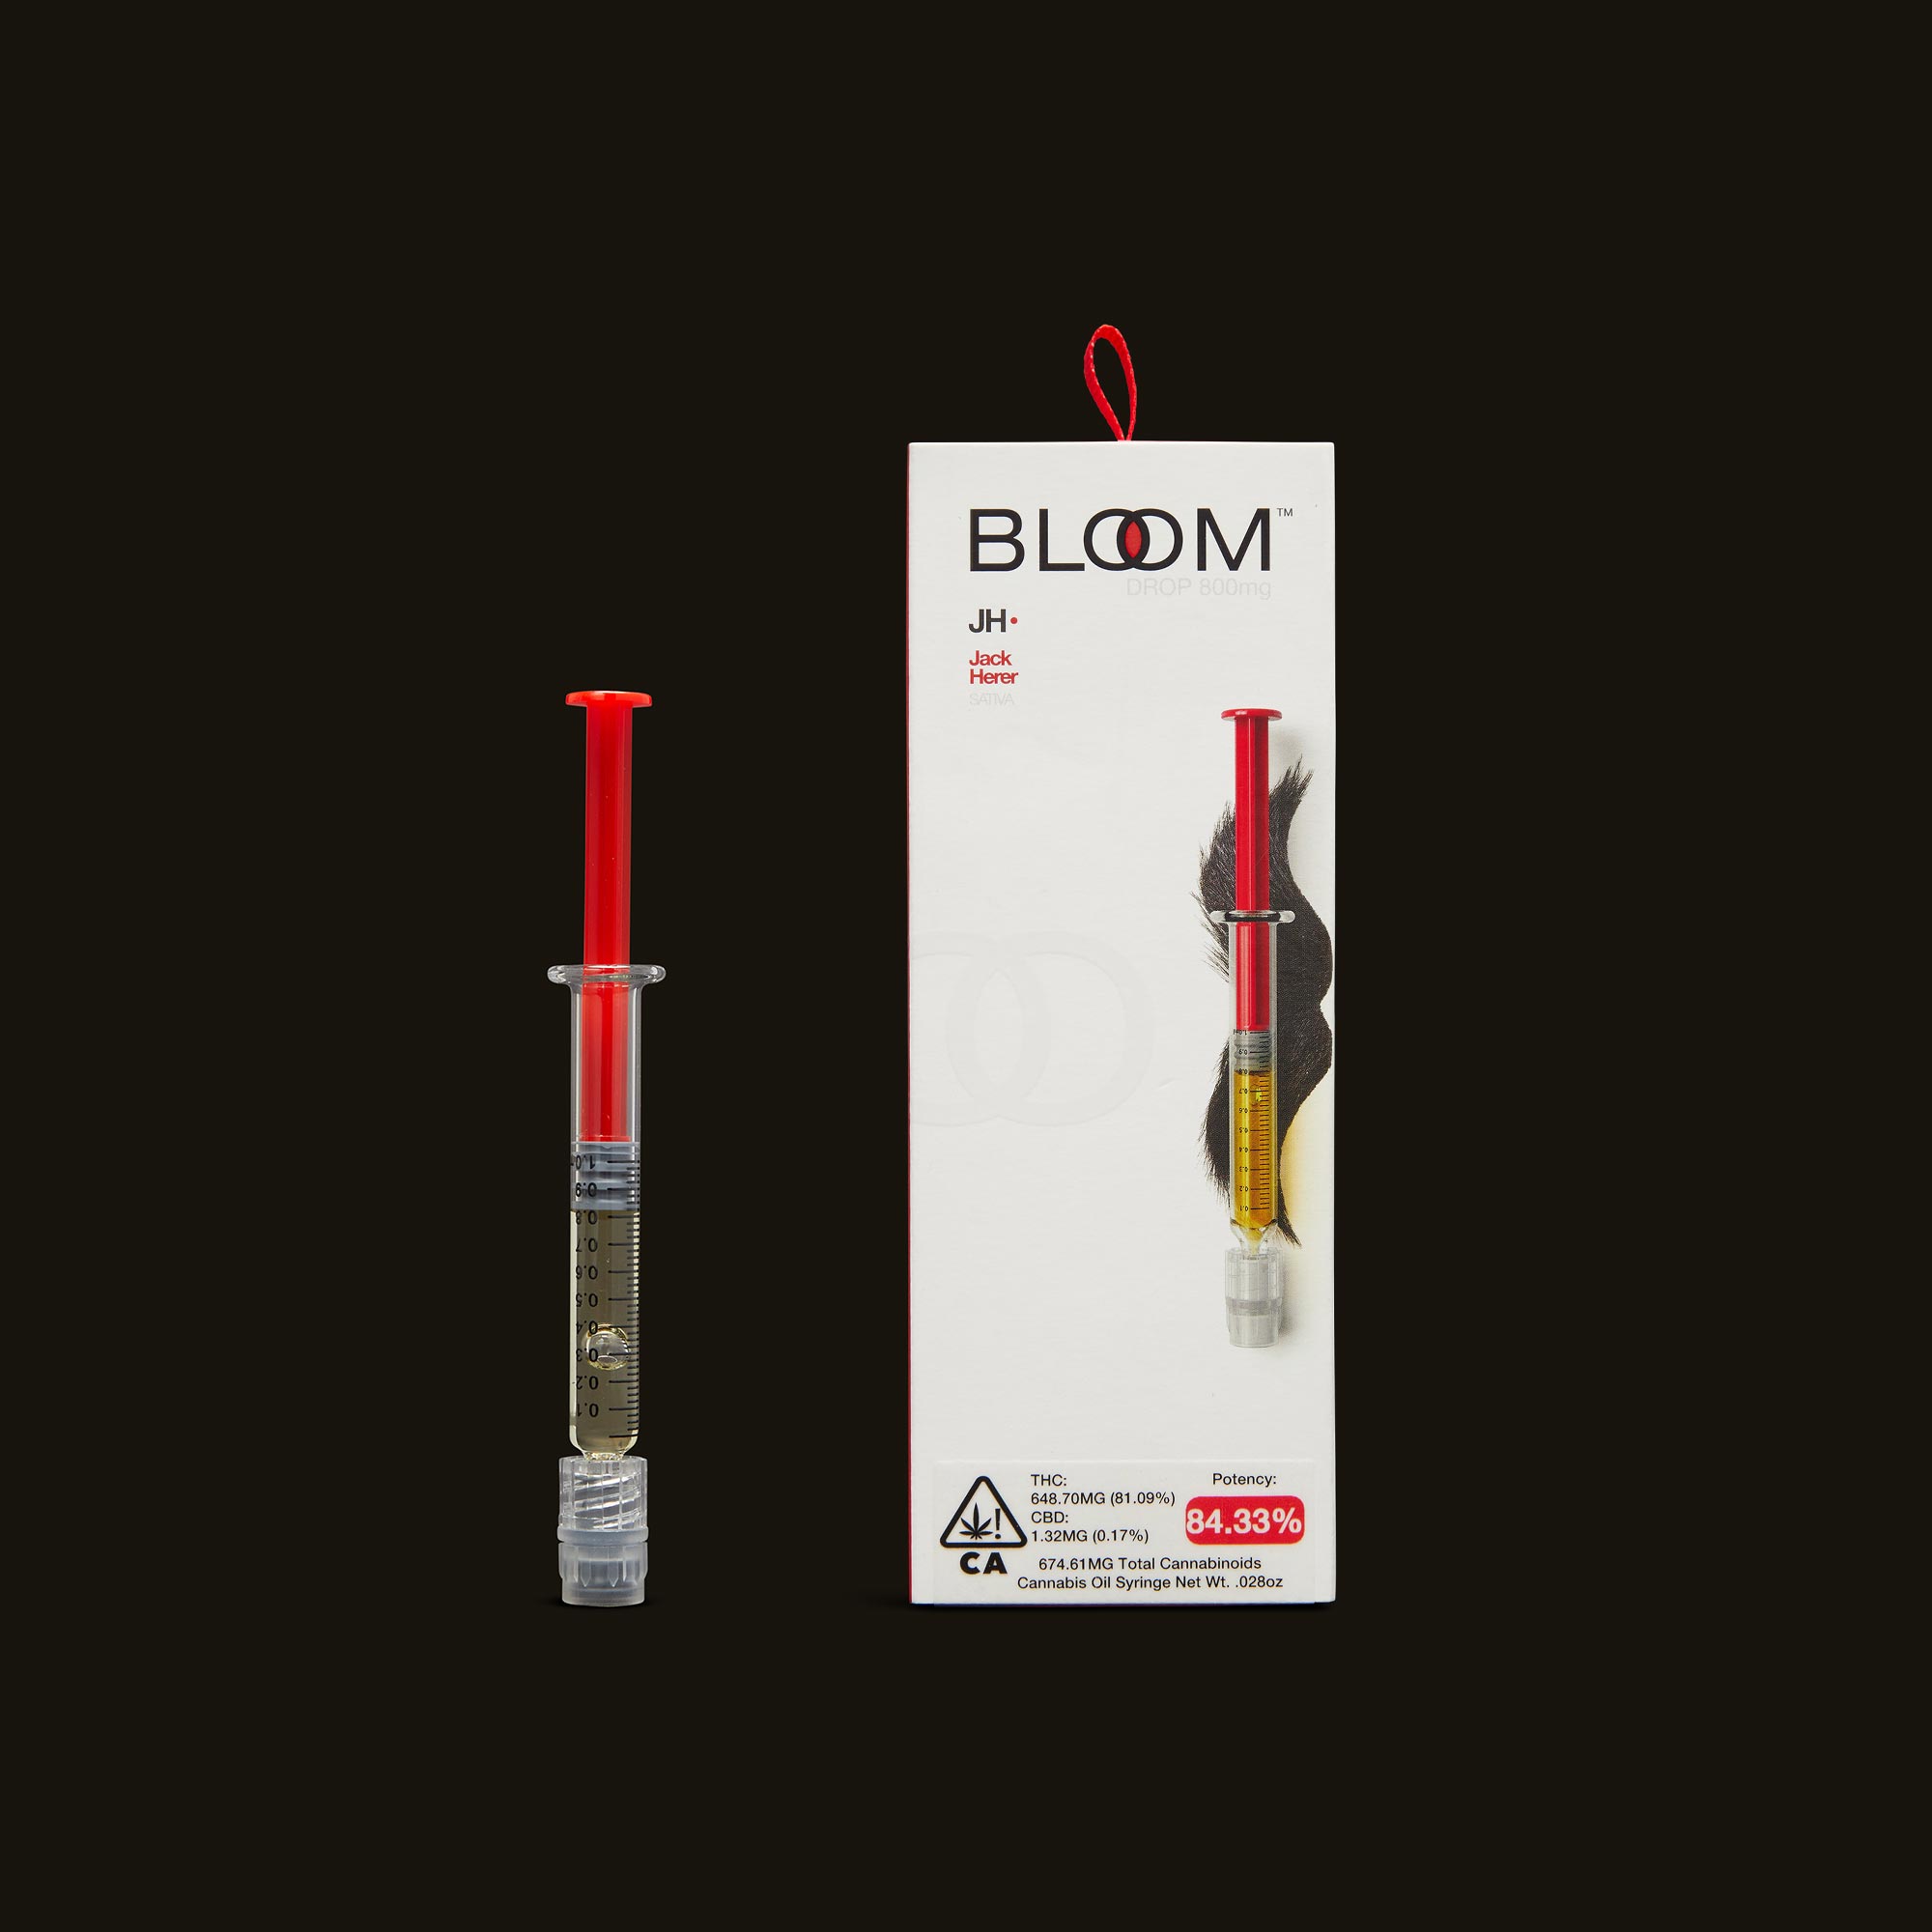 Bloom-Jack-Herer-Drop3202-1-2219950.jpg